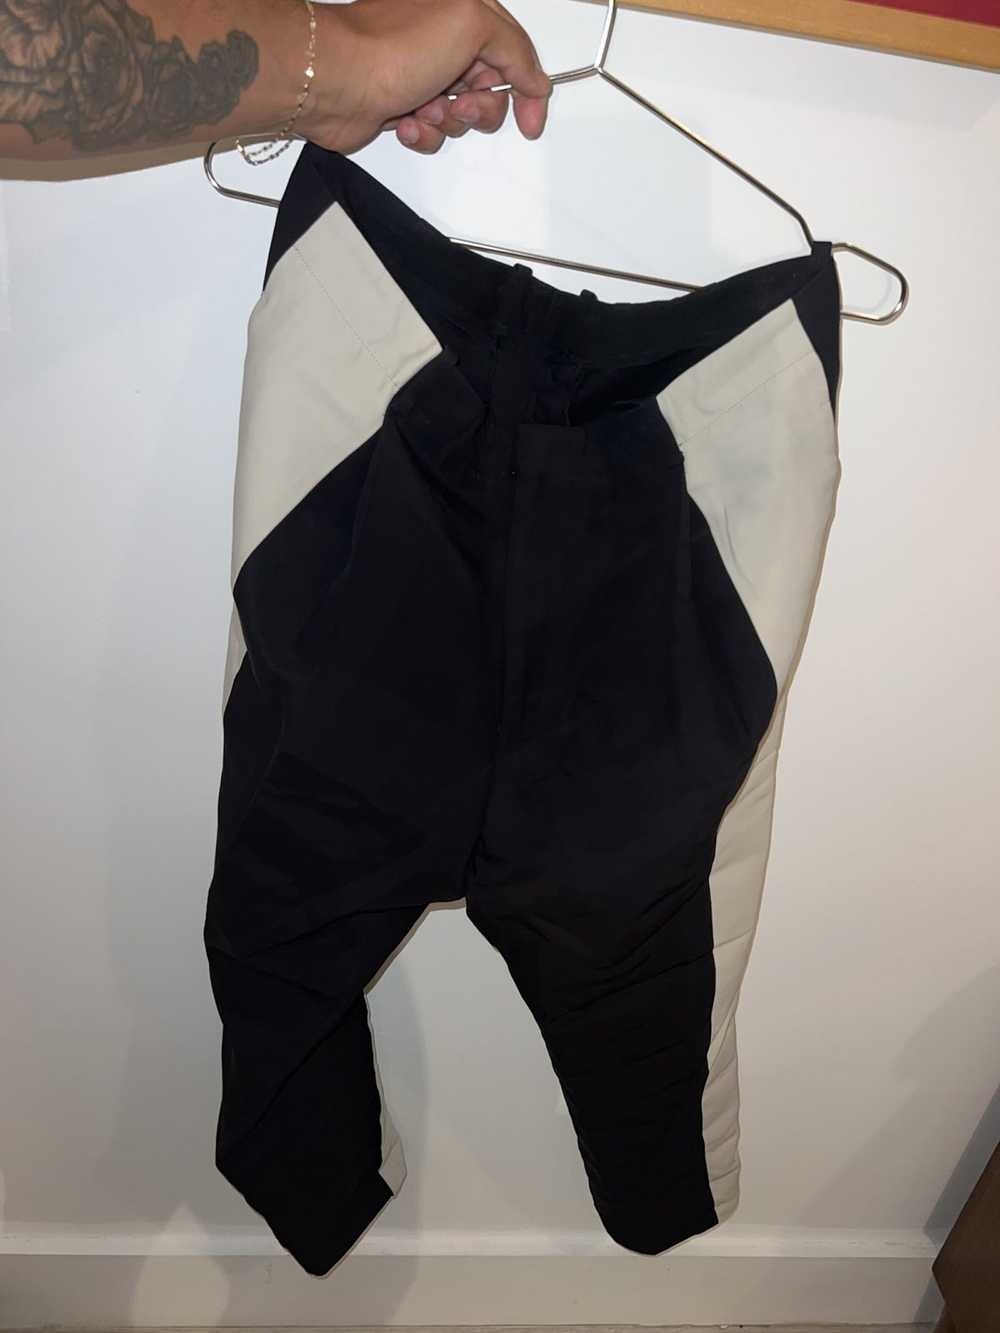 Lanvin Lanvin FW’14 trouser - image 3